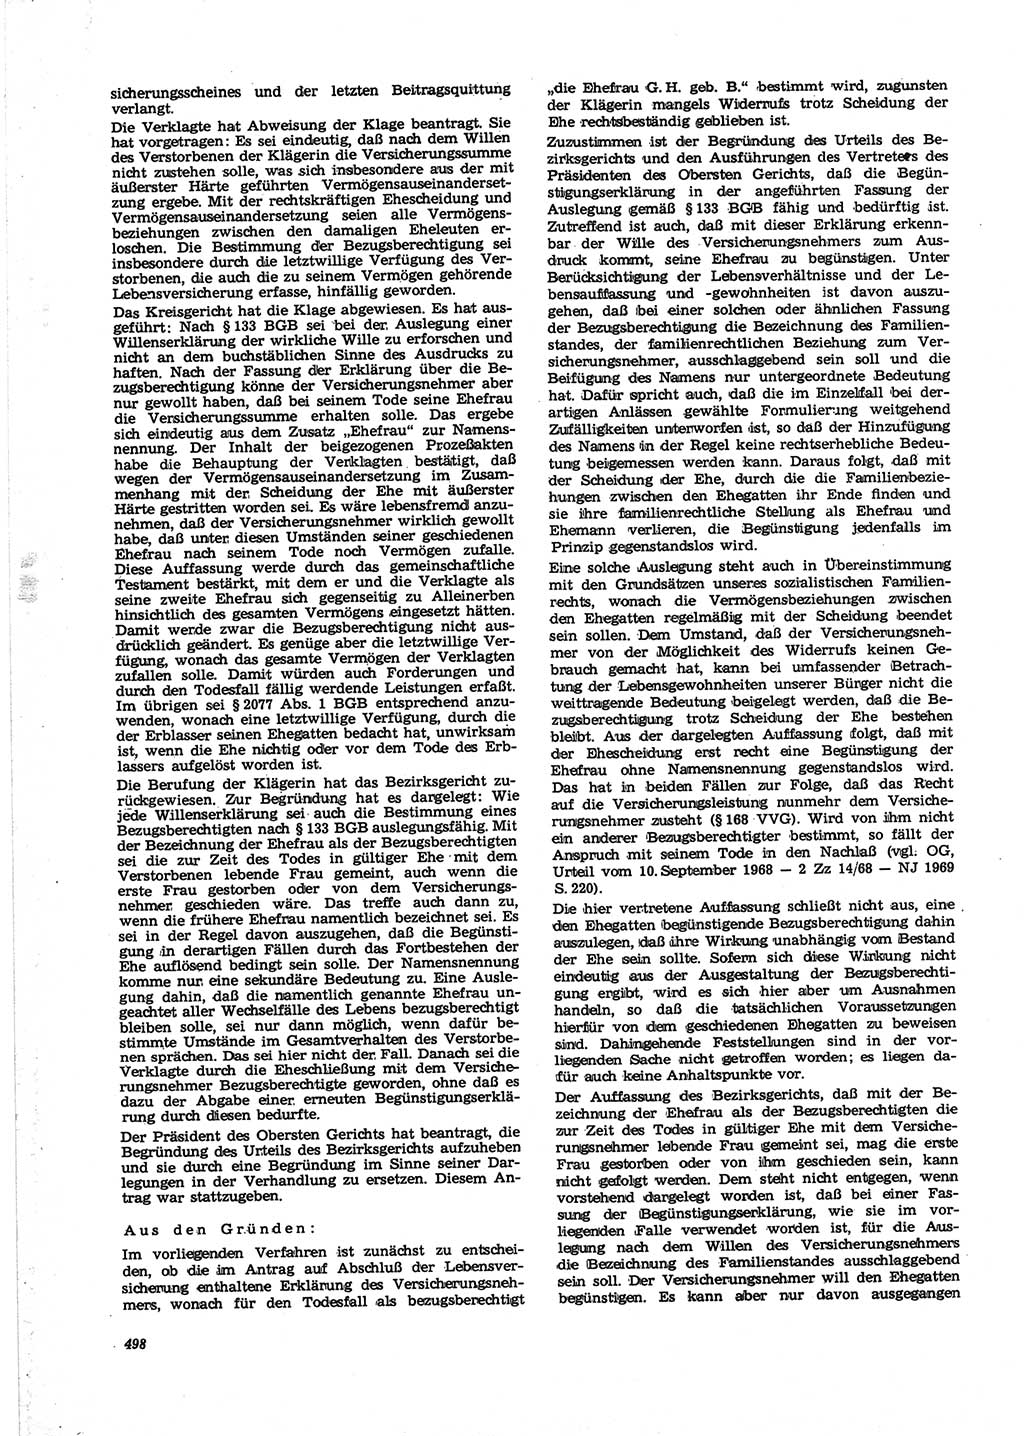 Neue Justiz (NJ), Zeitschrift für Recht und Rechtswissenschaft [Deutsche Demokratische Republik (DDR)], 25. Jahrgang 1971, Seite 498 (NJ DDR 1971, S. 498)